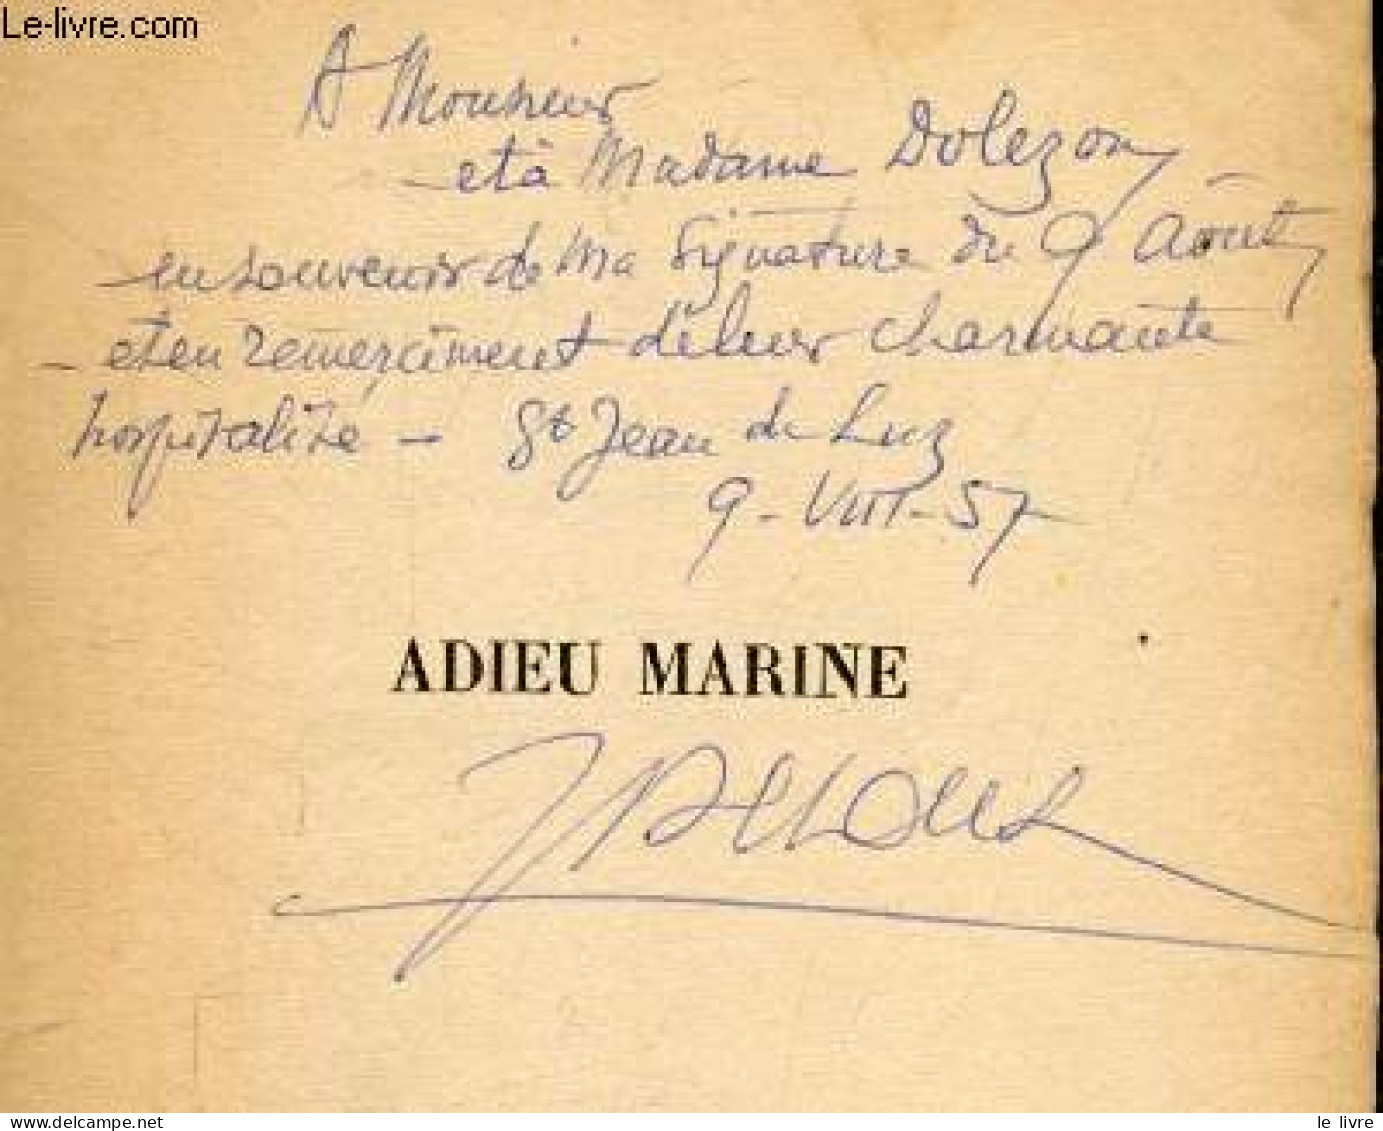 Adieu Marine + Envoi De L'auteur - DECOUX JEAN - 1957 - Autographed